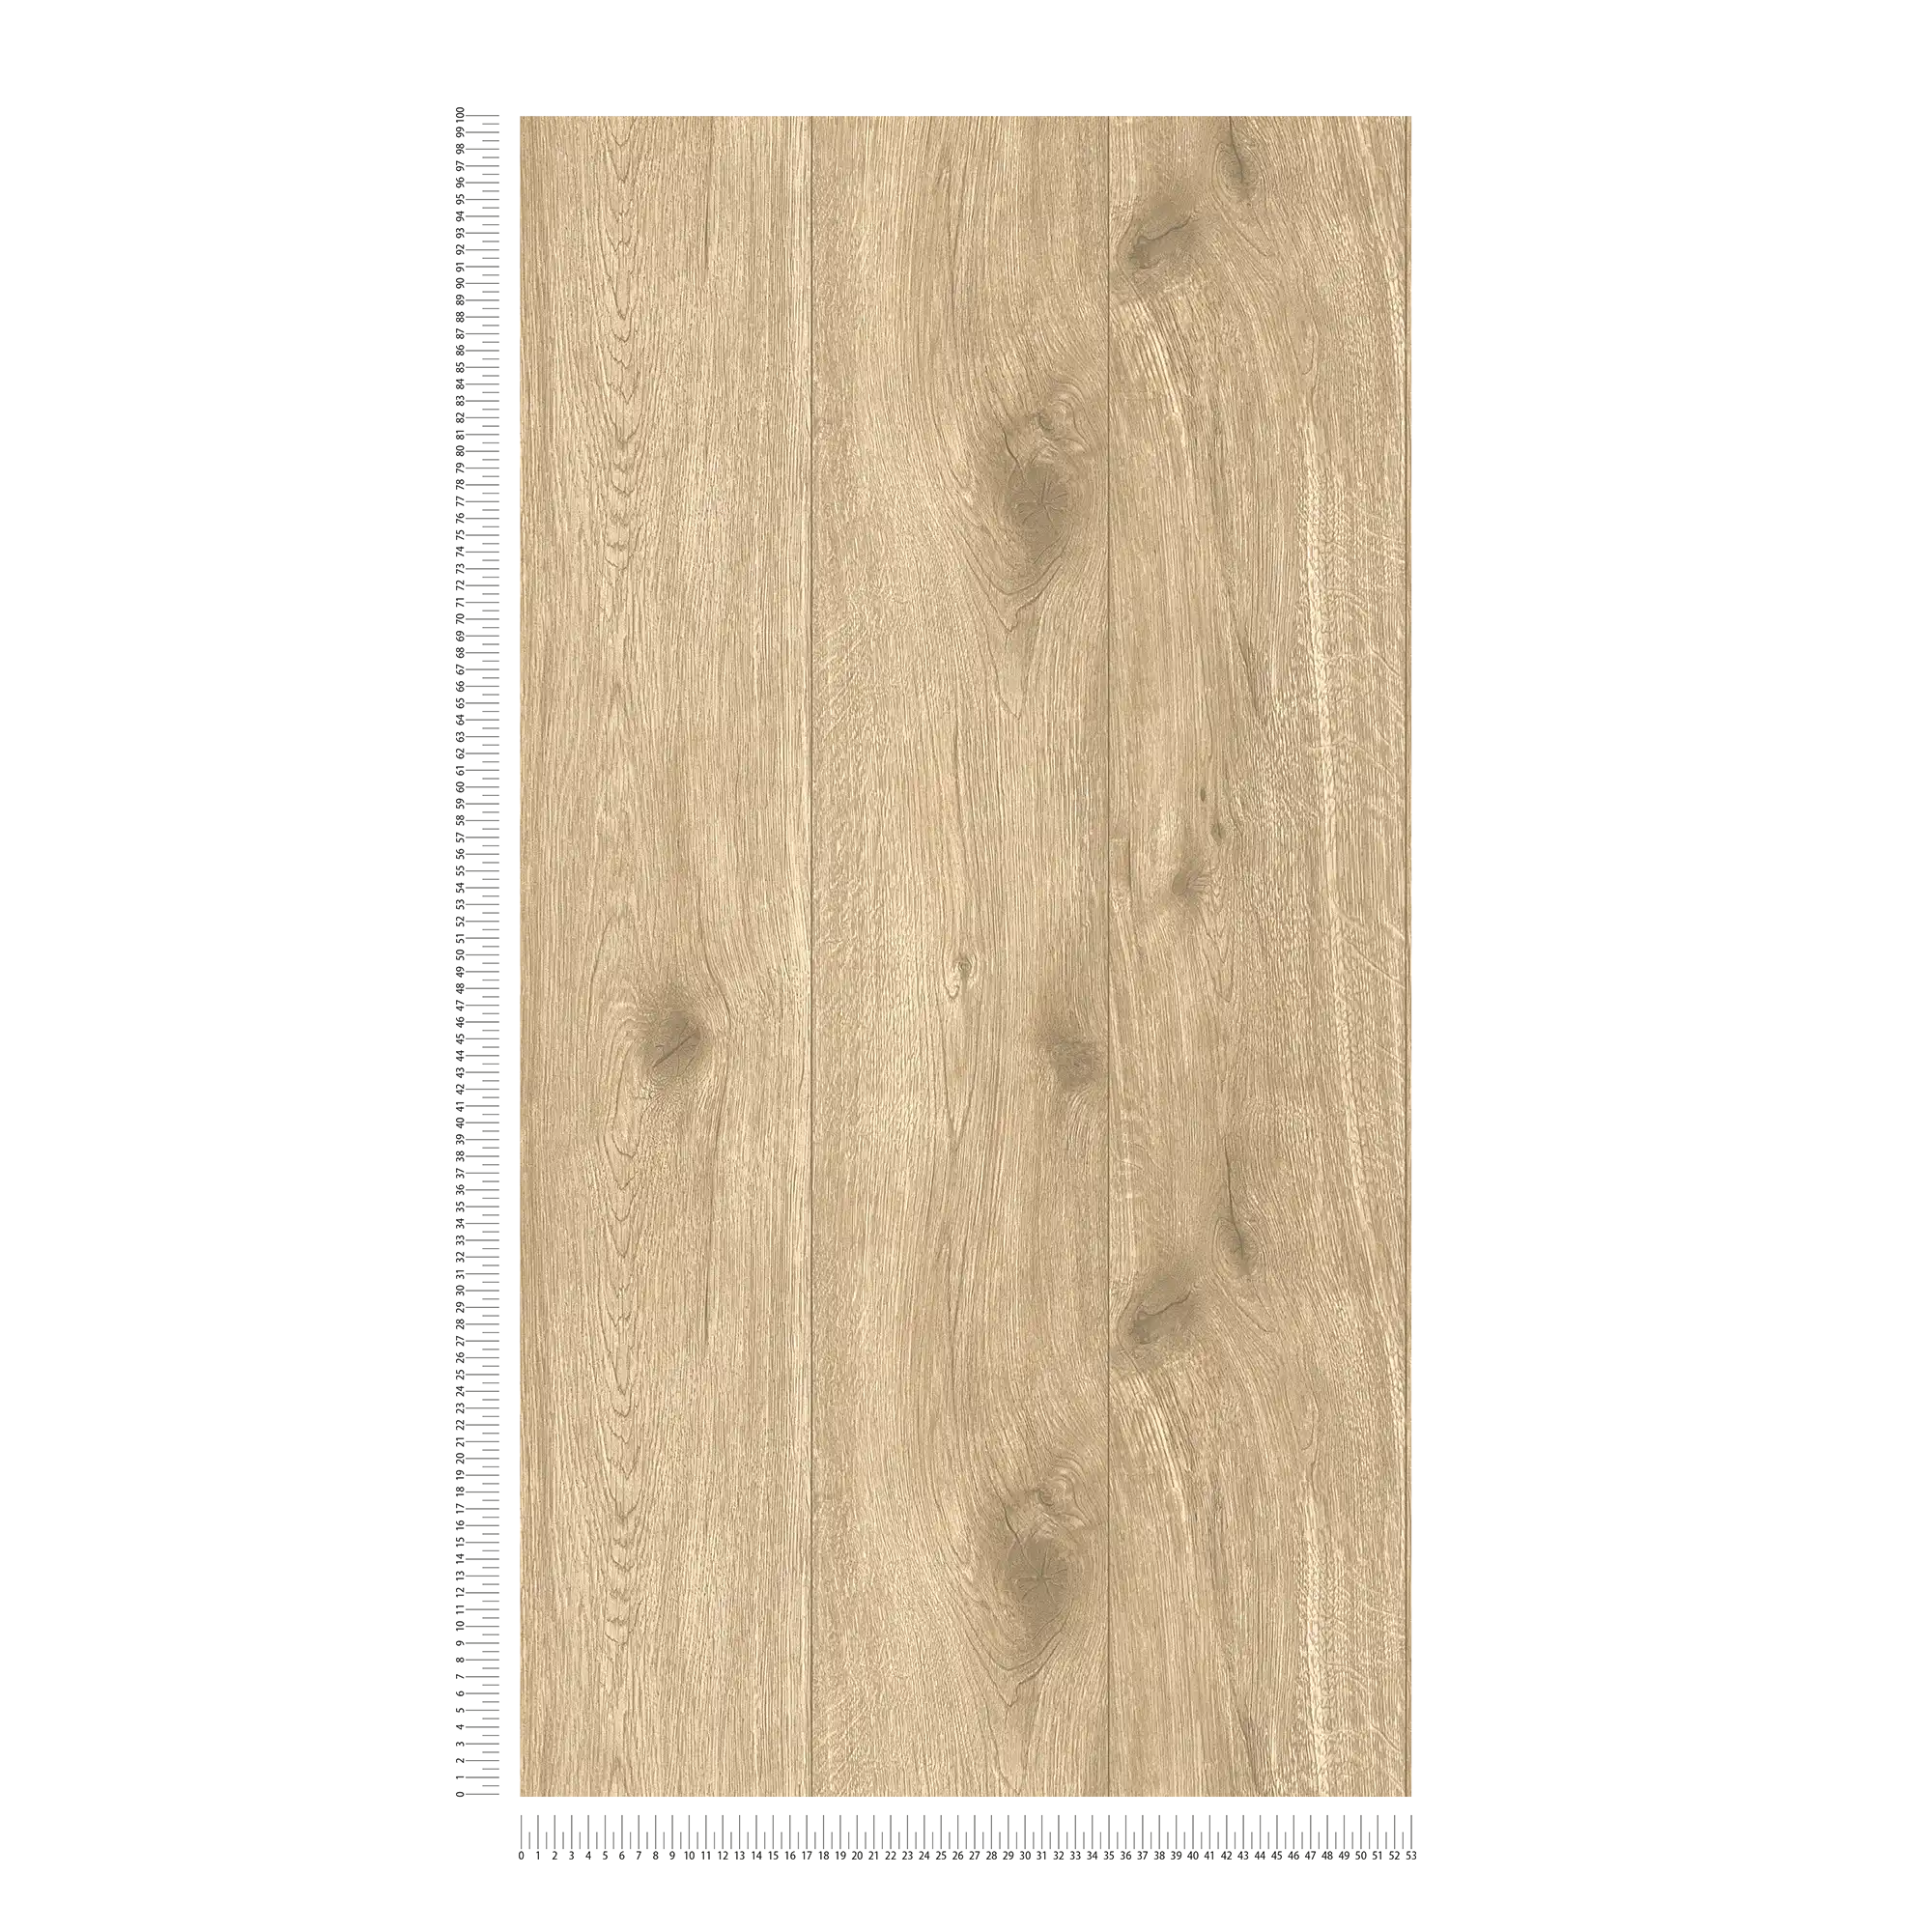             Papel pintado de madera marrón claro - Marrón, Beige
        